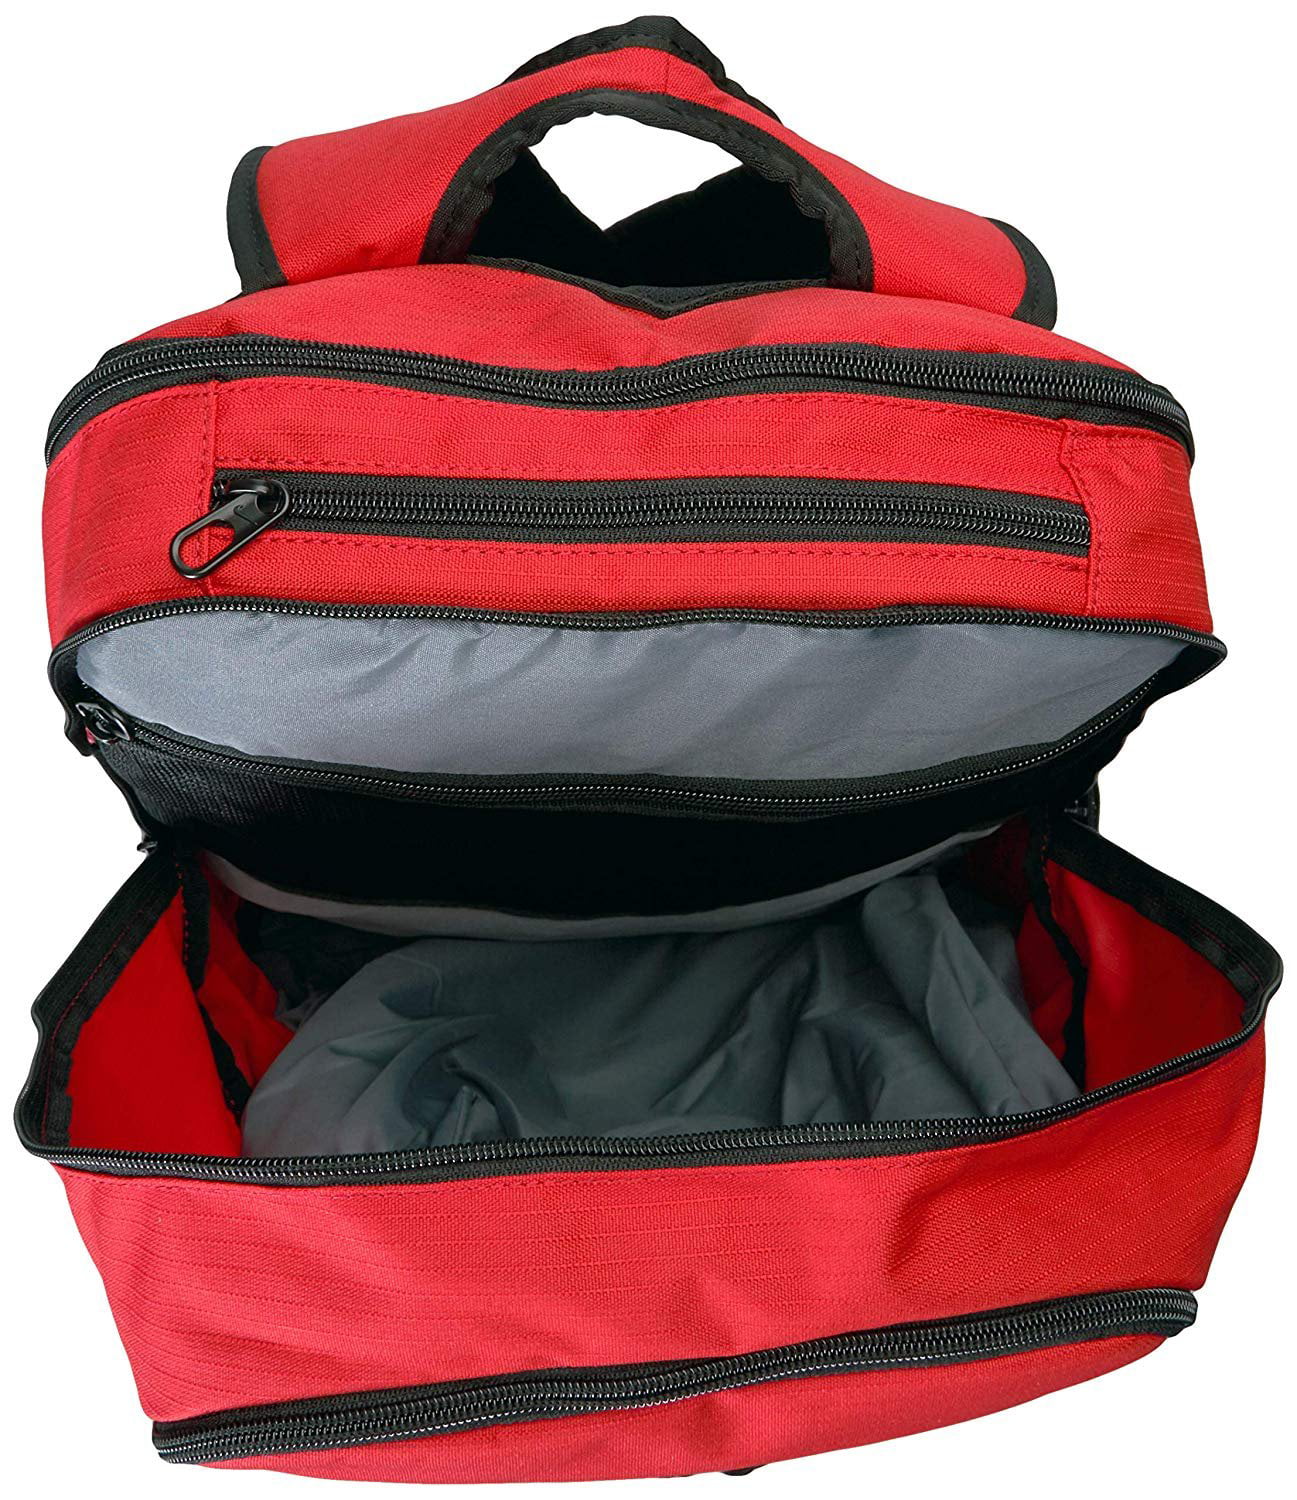 NIKE Brasilia 9.0 X-Large Backpack, BA5959 (Flint Grey/Black/White